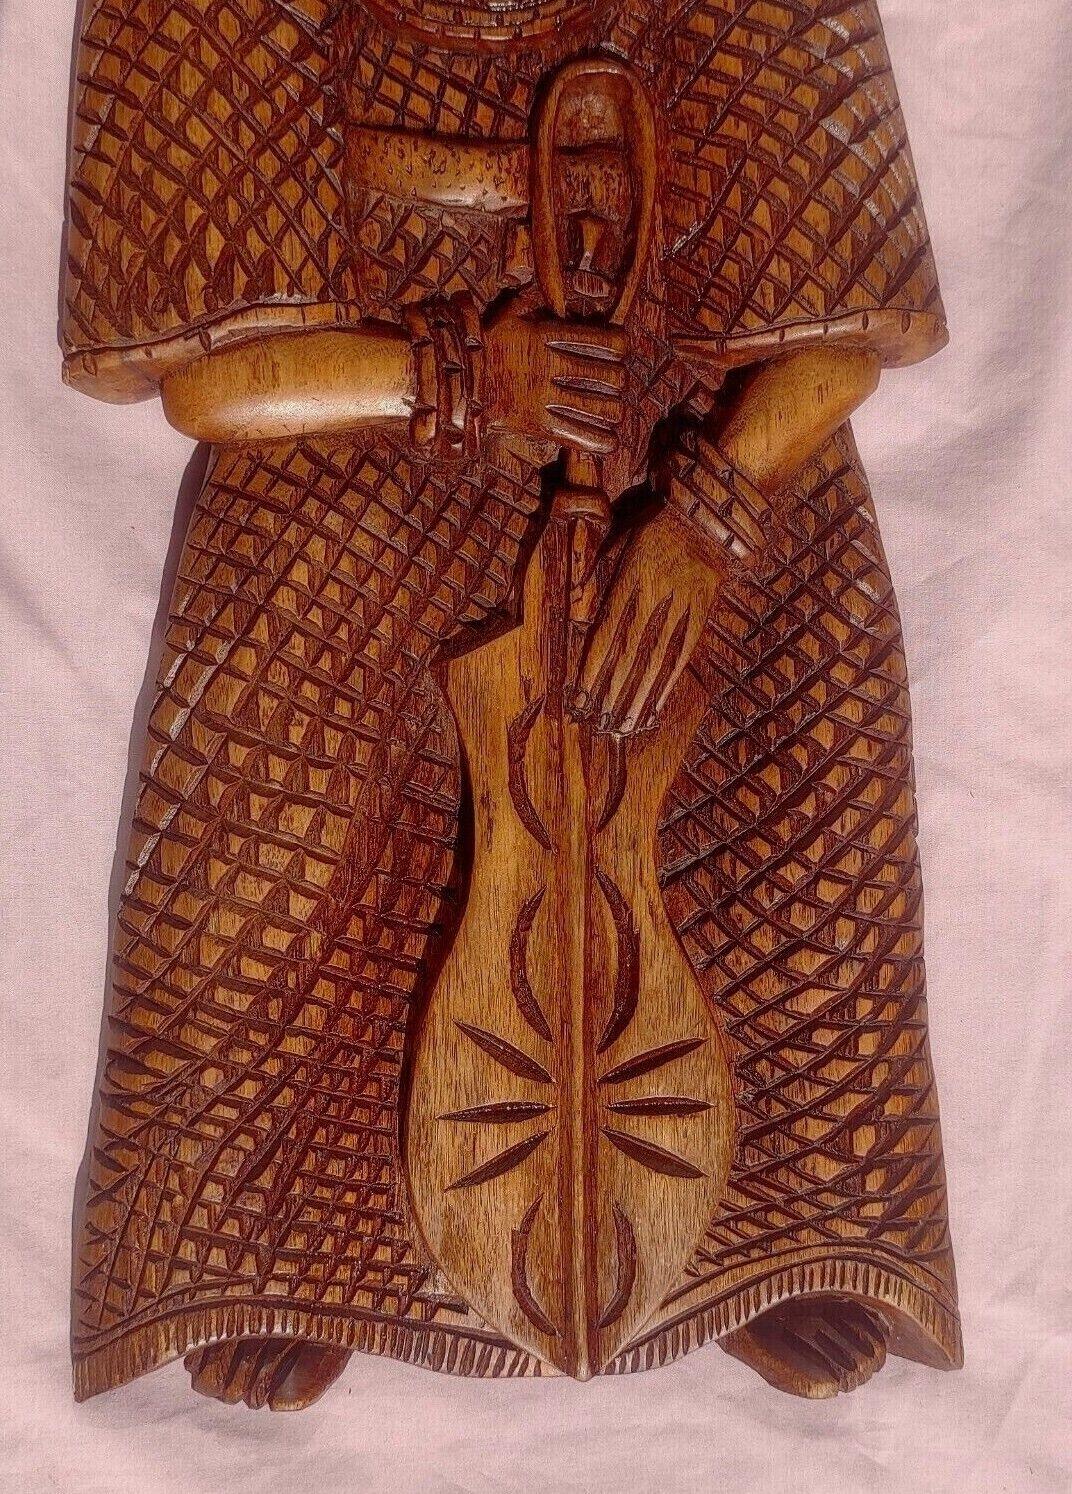 Benin Edo Warrior Figures Wood Carving Sculptures Nigerian Africa 24" - Tommy's Treasure